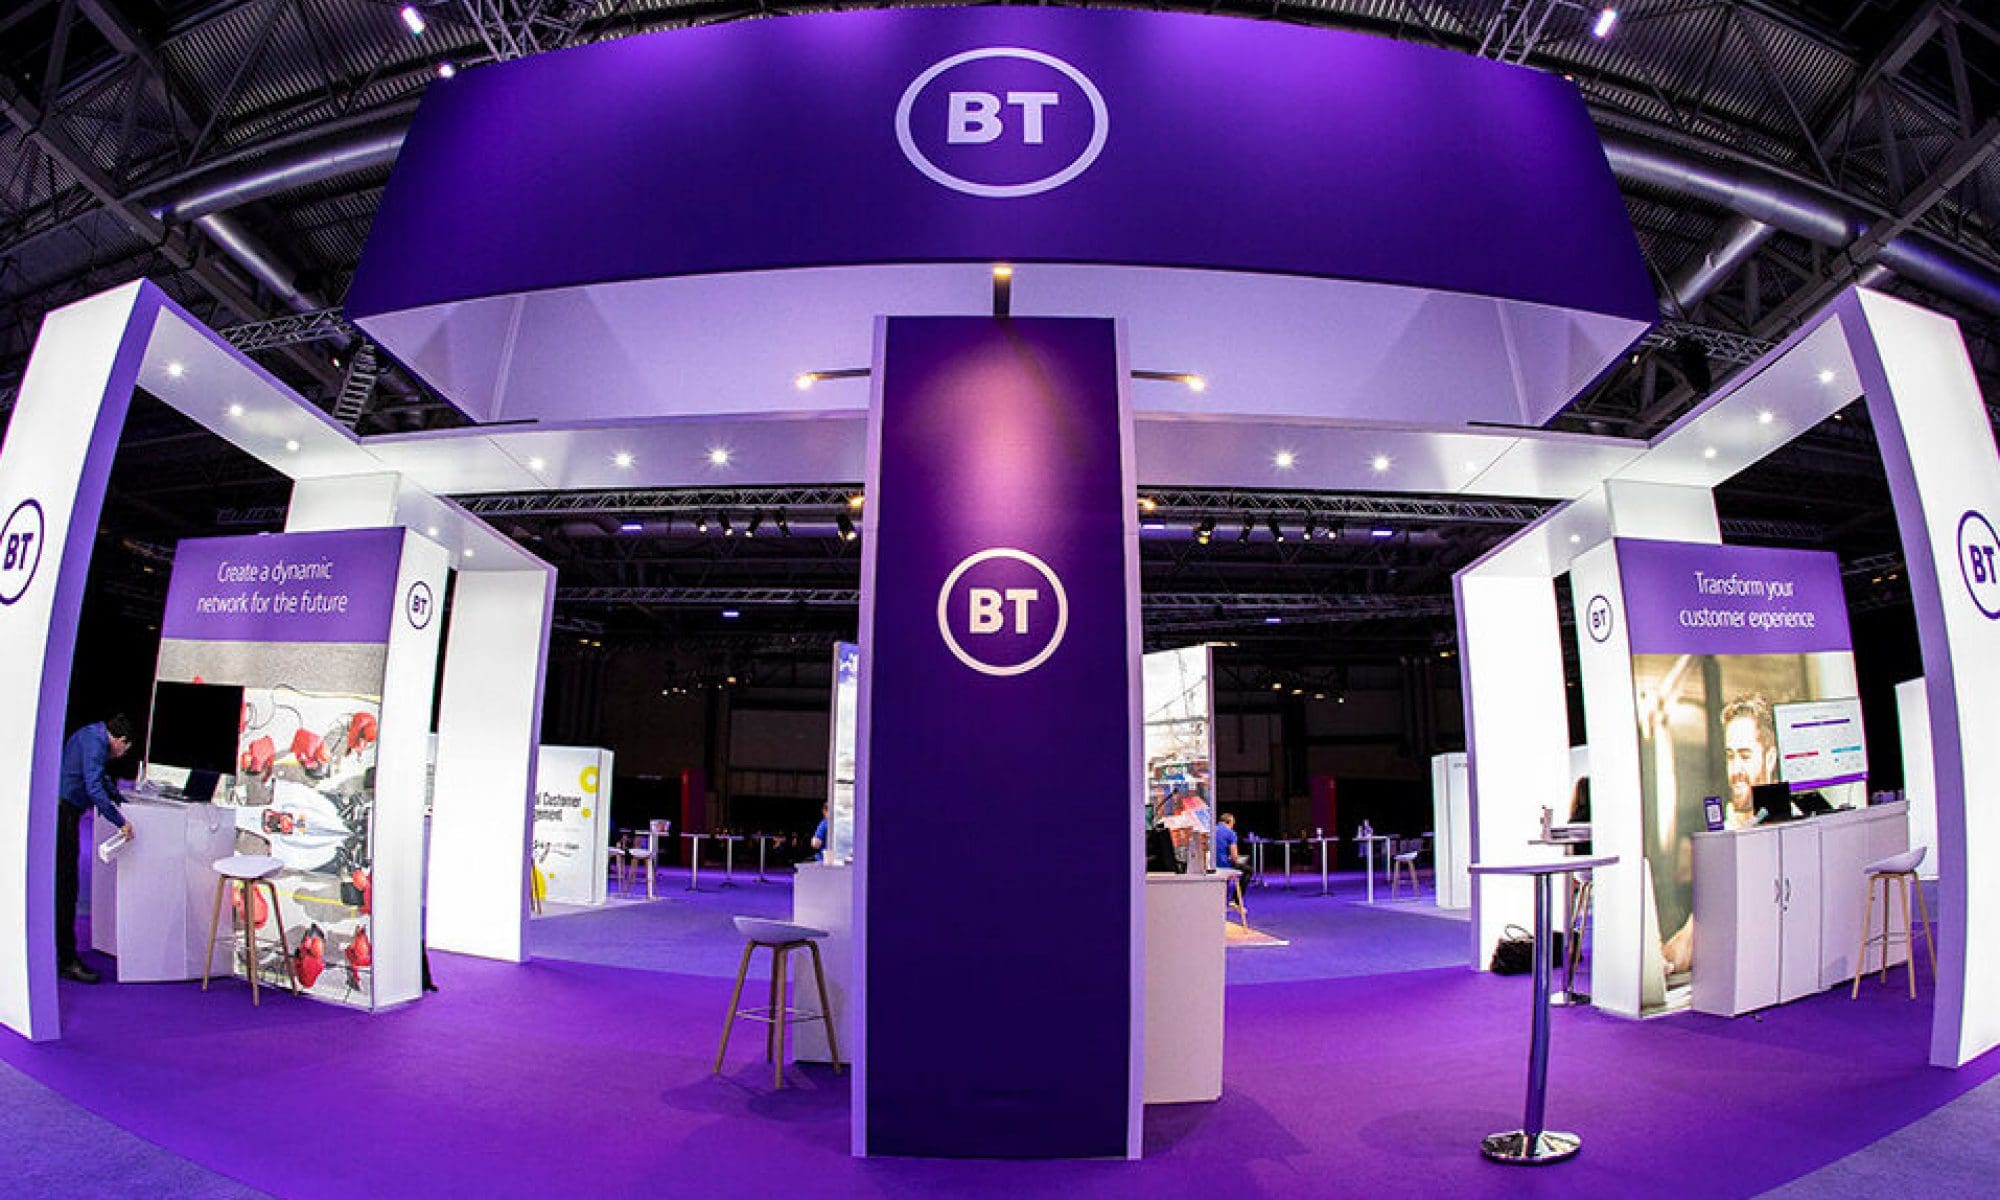 BT Exhibition stand at Birmingham NEC